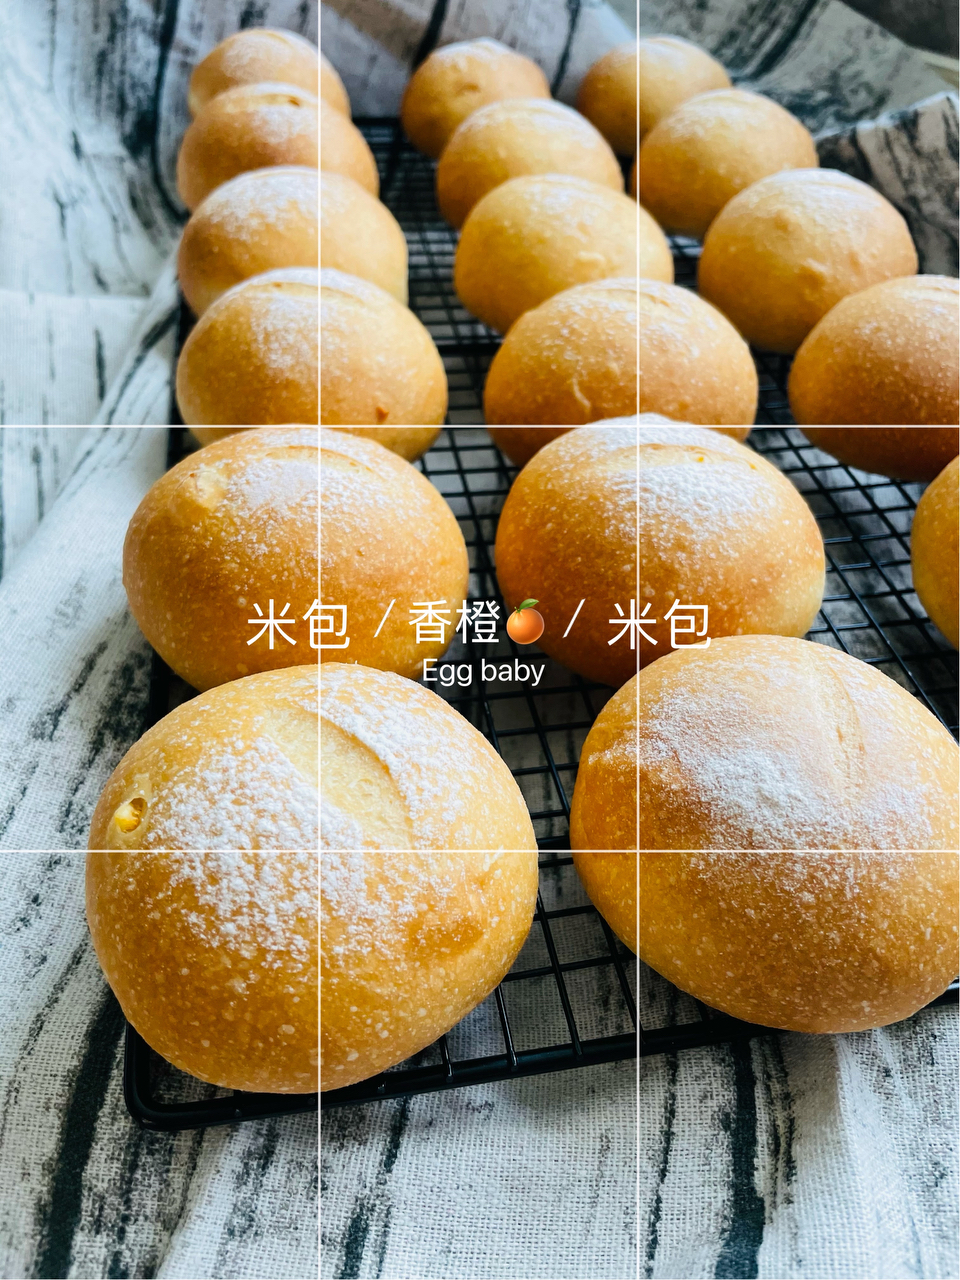 香橙🍊大米面包